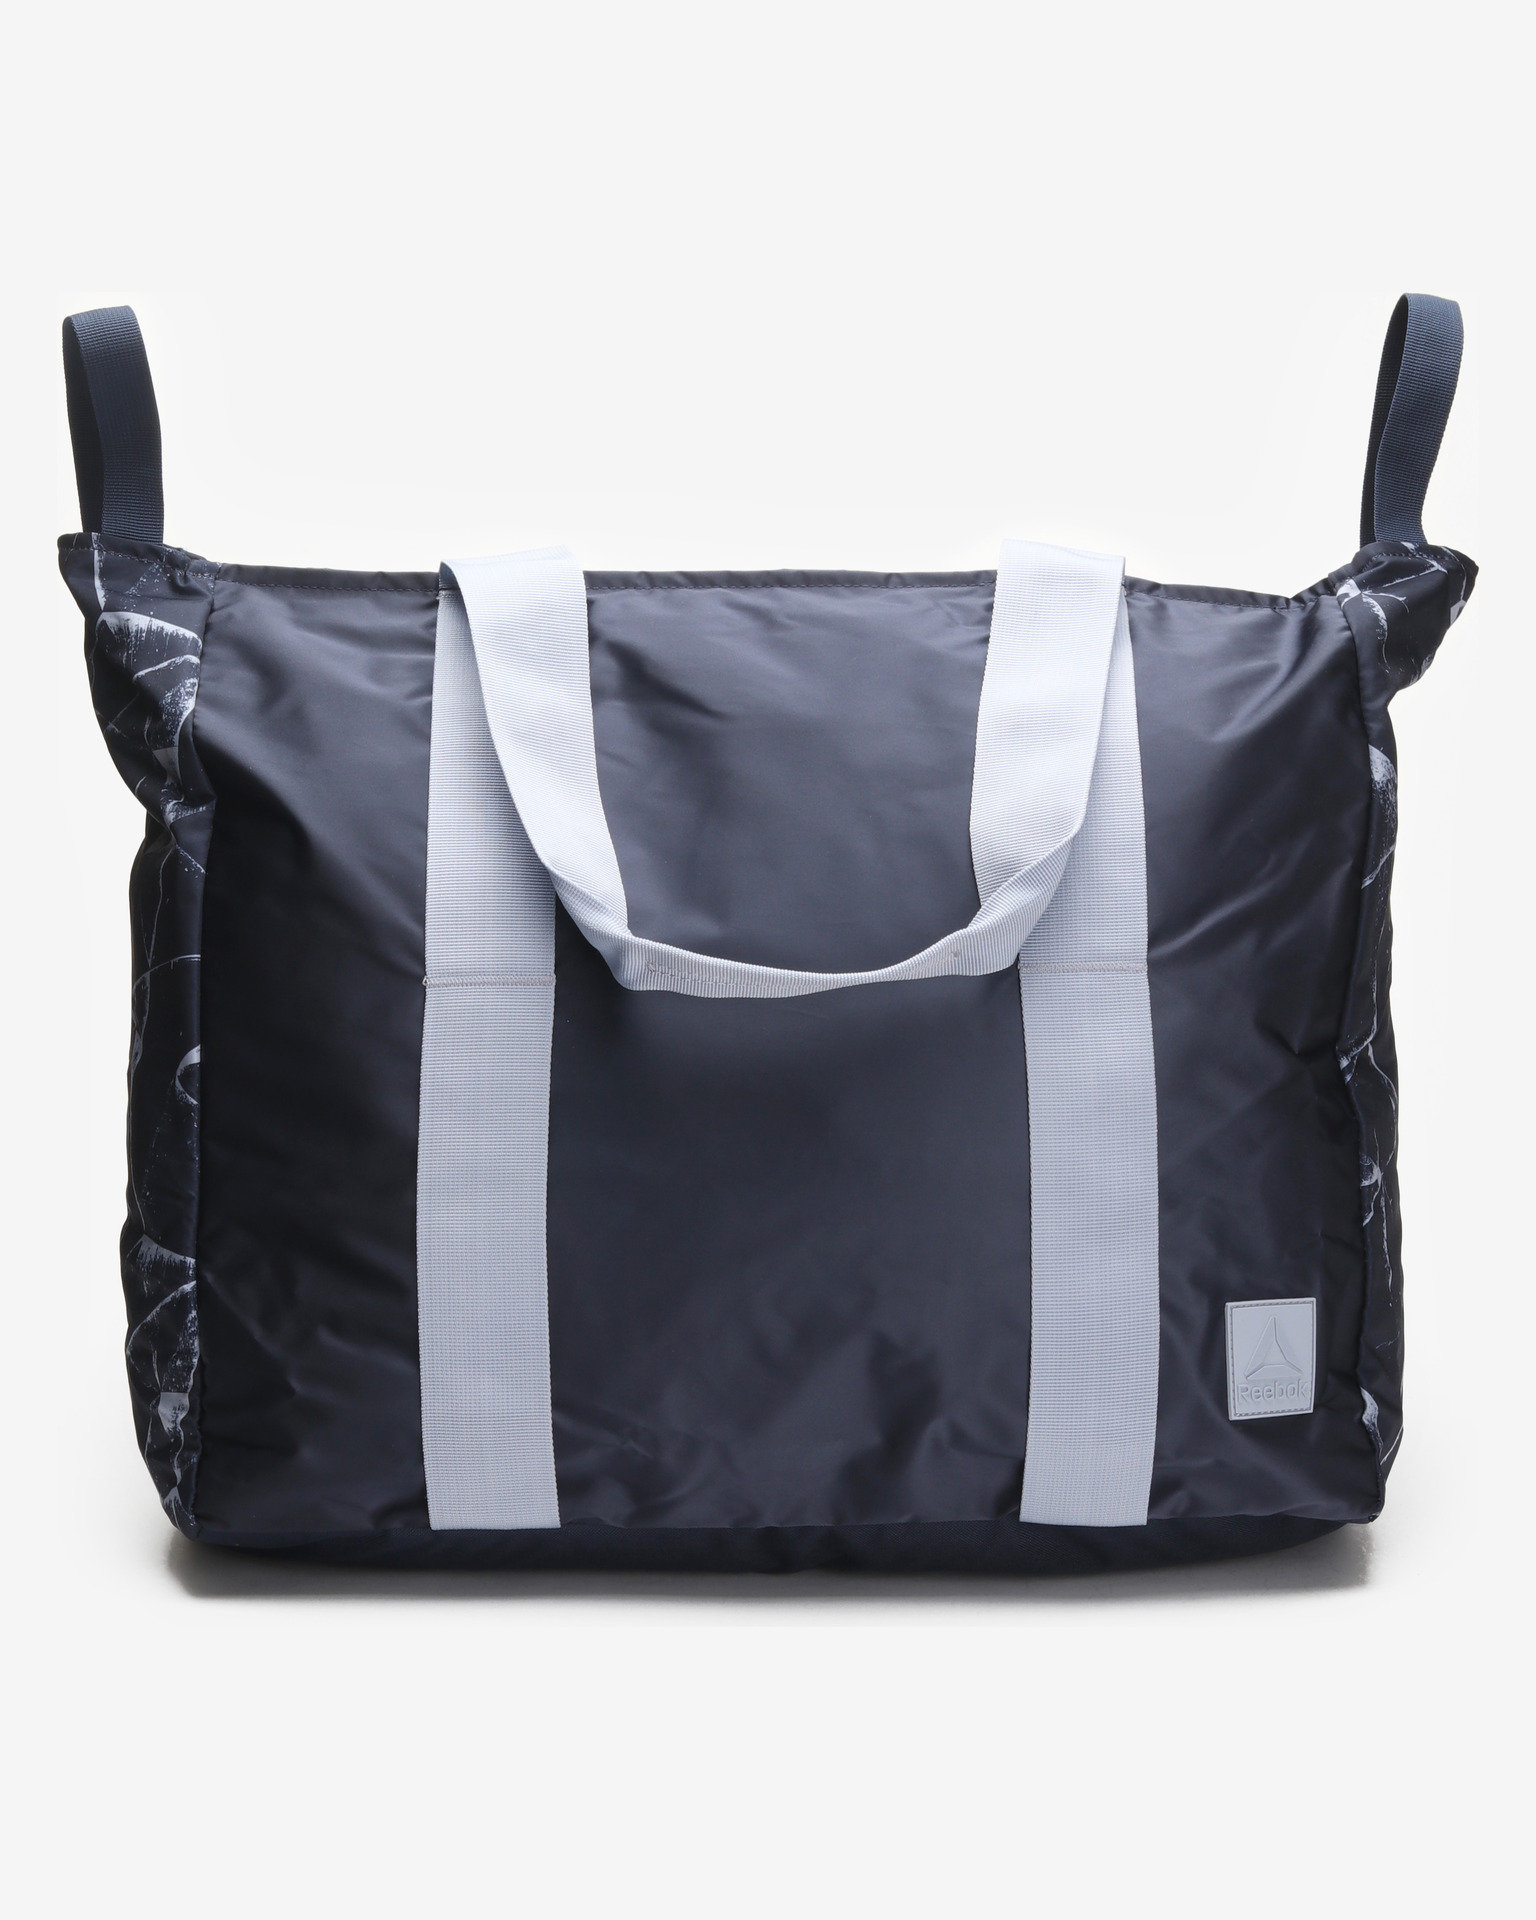 Reebok Mini Backpack W/Outer Zip Pocket & Inner Divider Black | eBay